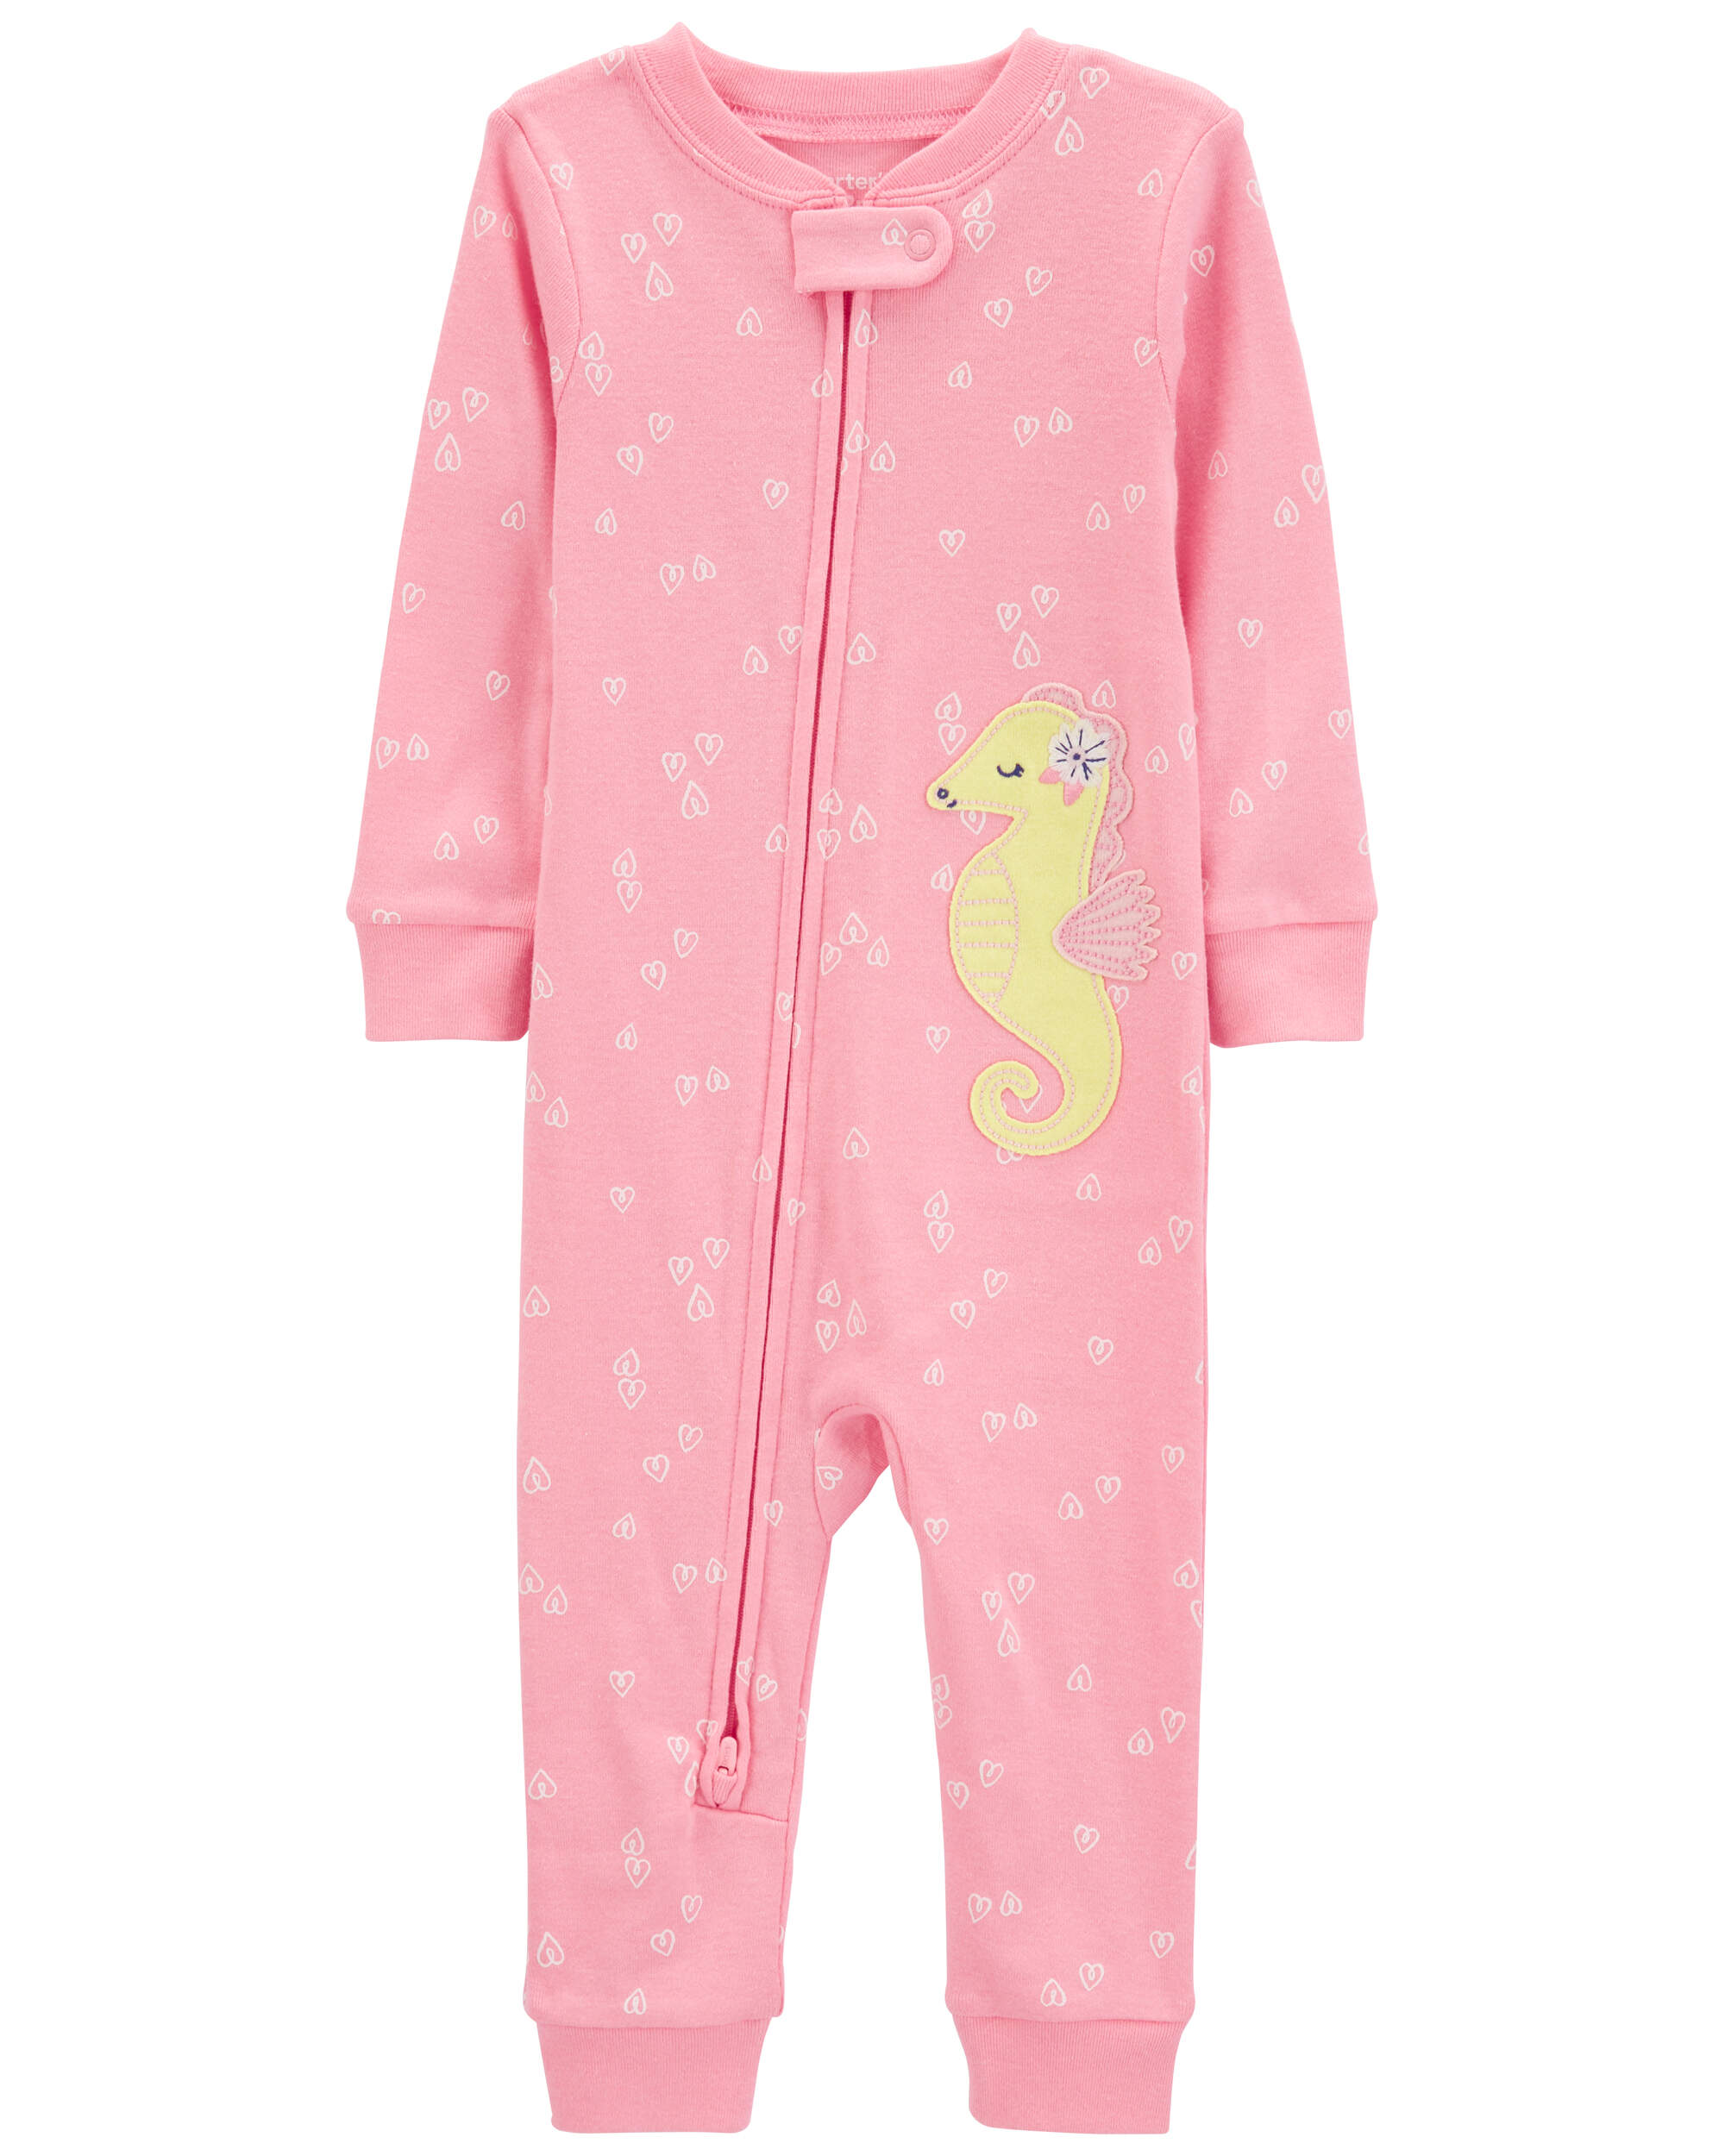 Toddler 1-Piece Sea Horse 100% Snug Fit Cotton Footless Pyjamas